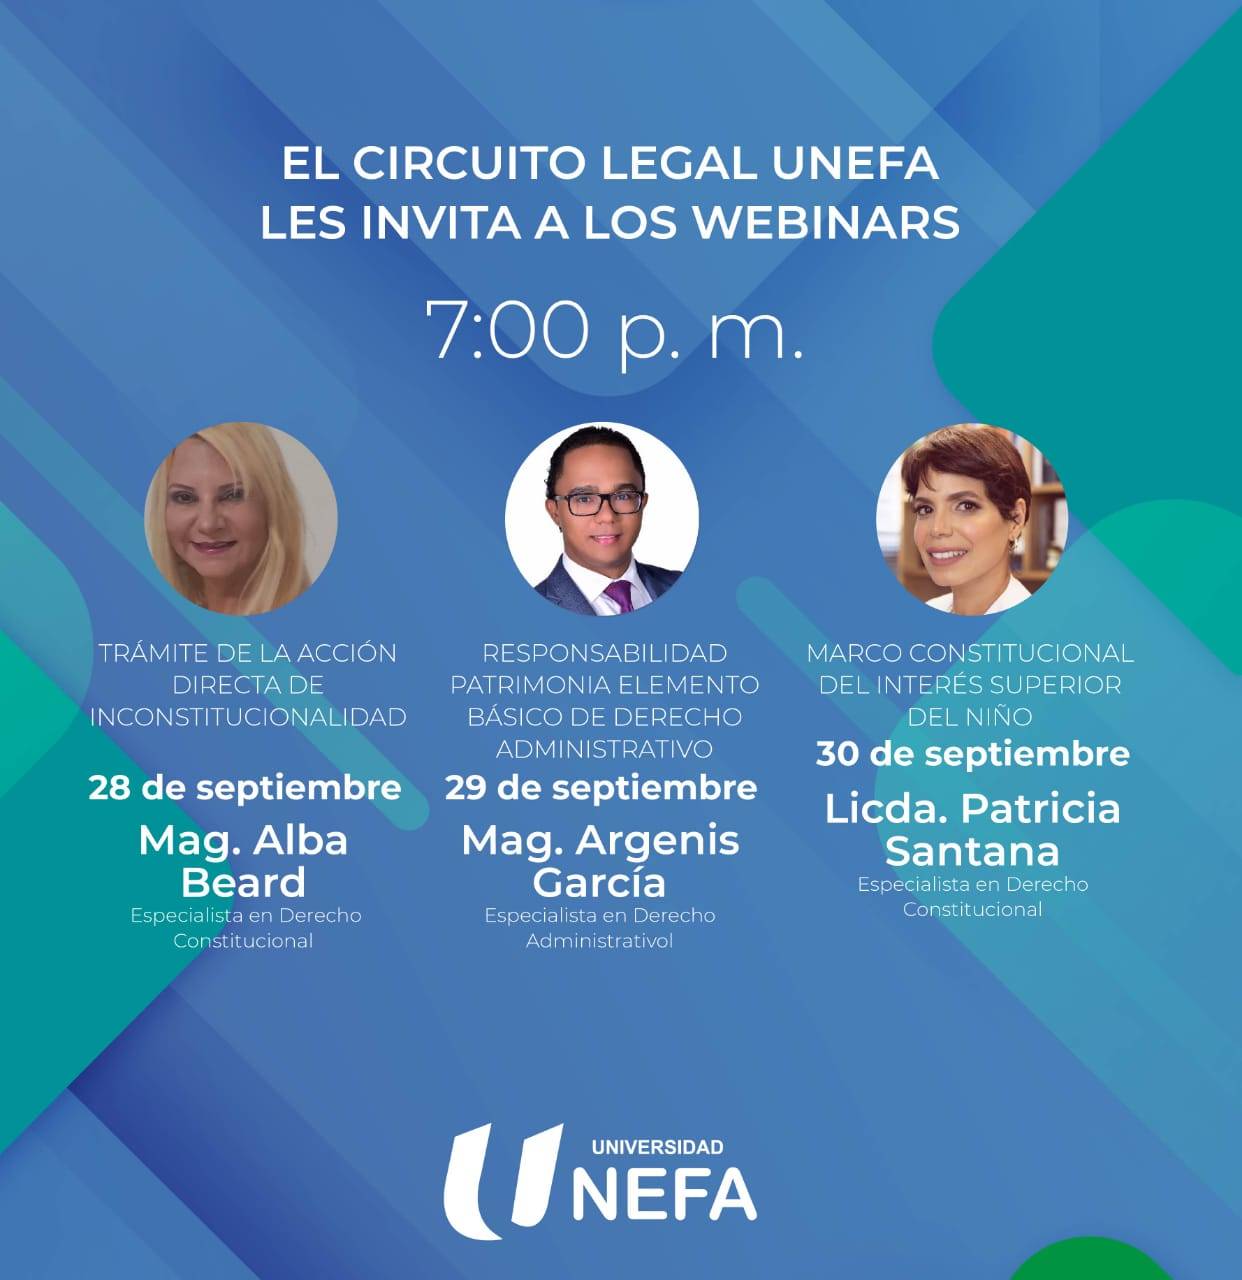 UNEFA invita a participar en semana de webinars sobre temas de Derecho